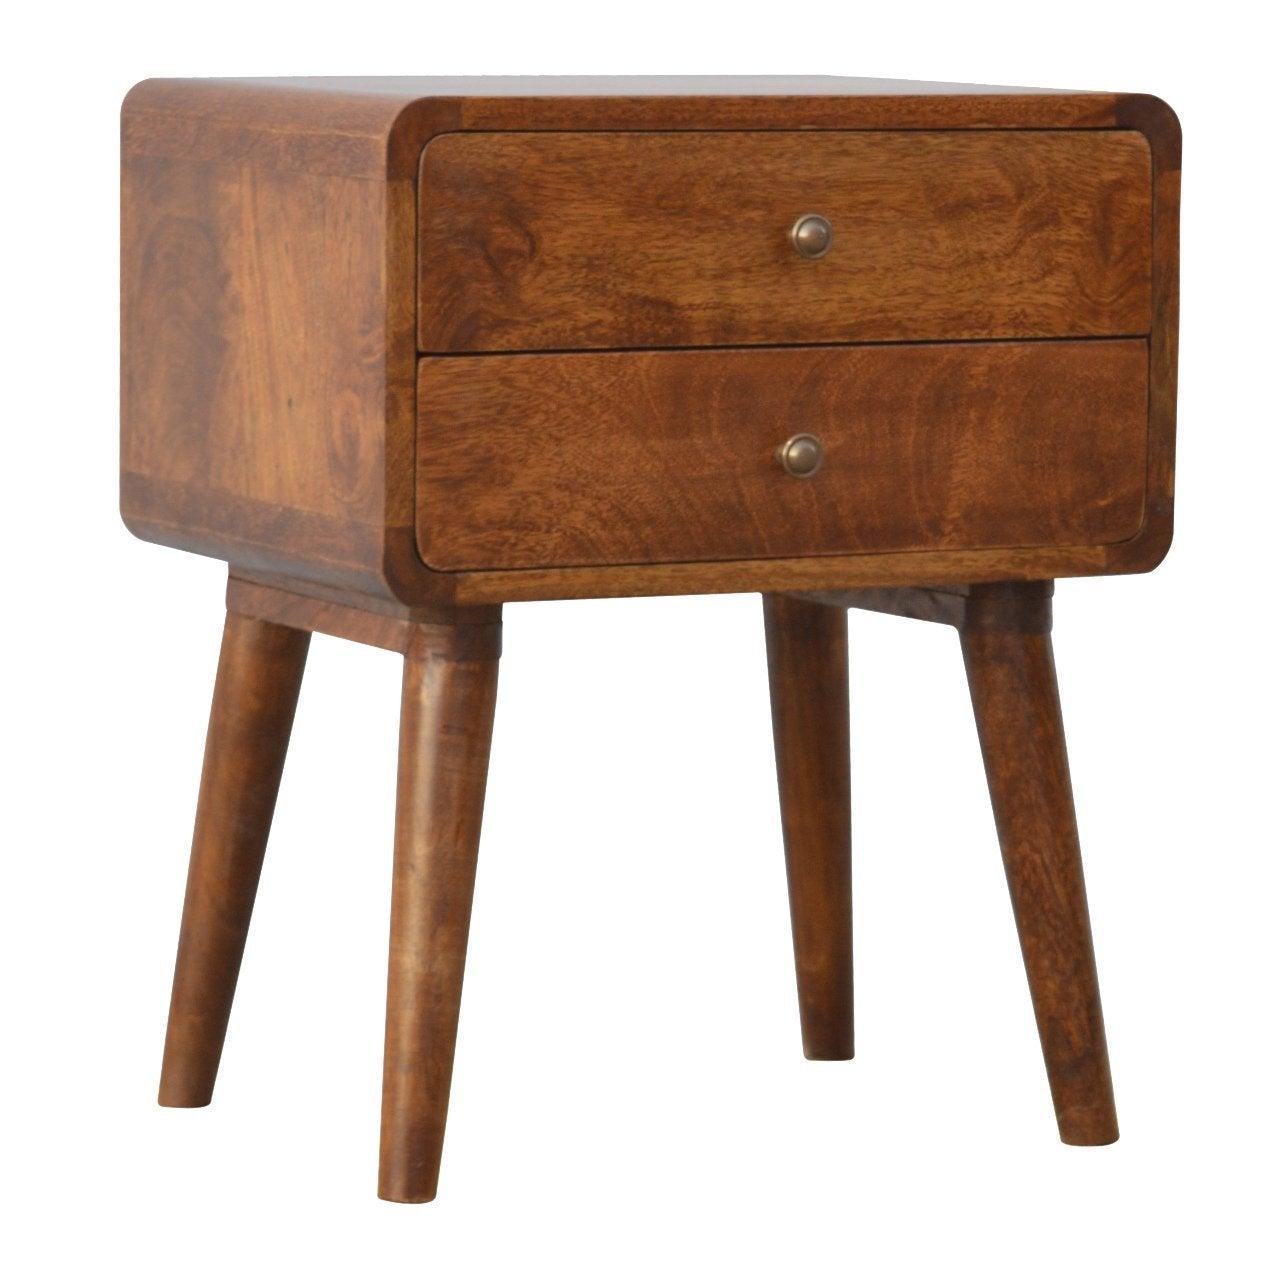 Curved chestnut bedside table - crimblefest furniture - image 3